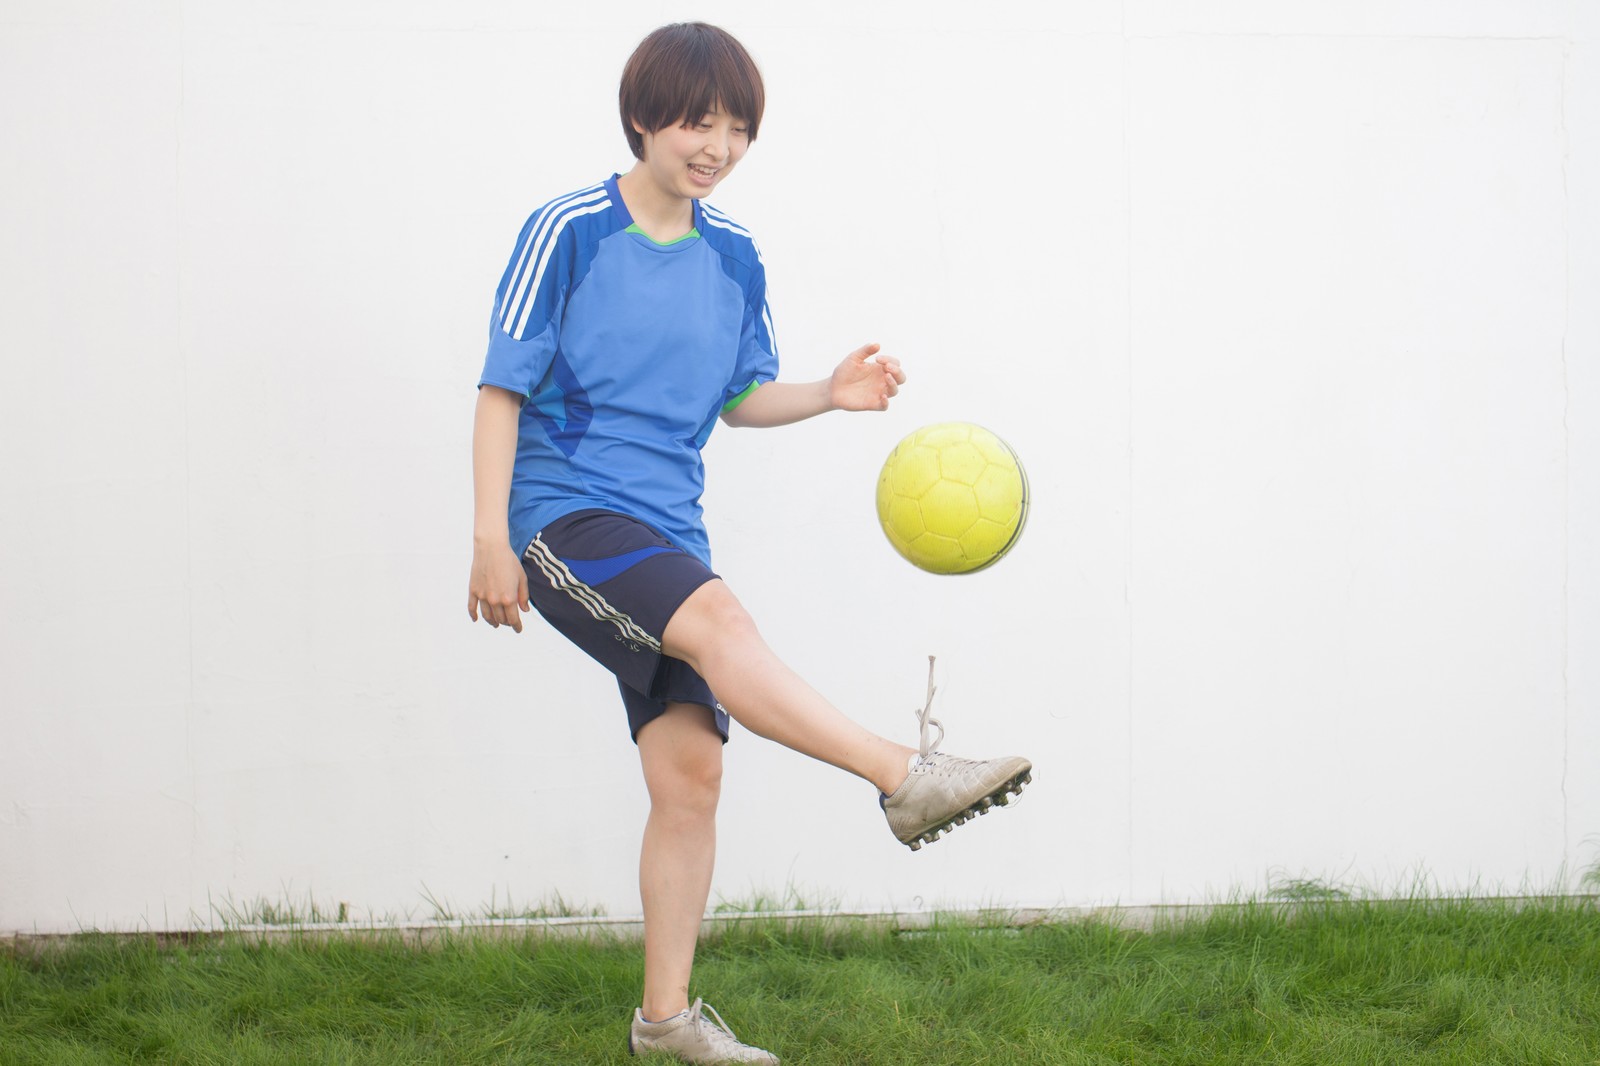 小学生のサッカーの練習でリフティングは必要か について考えてみた サッカーでいつもベンチの子供の親が本音で語る物語